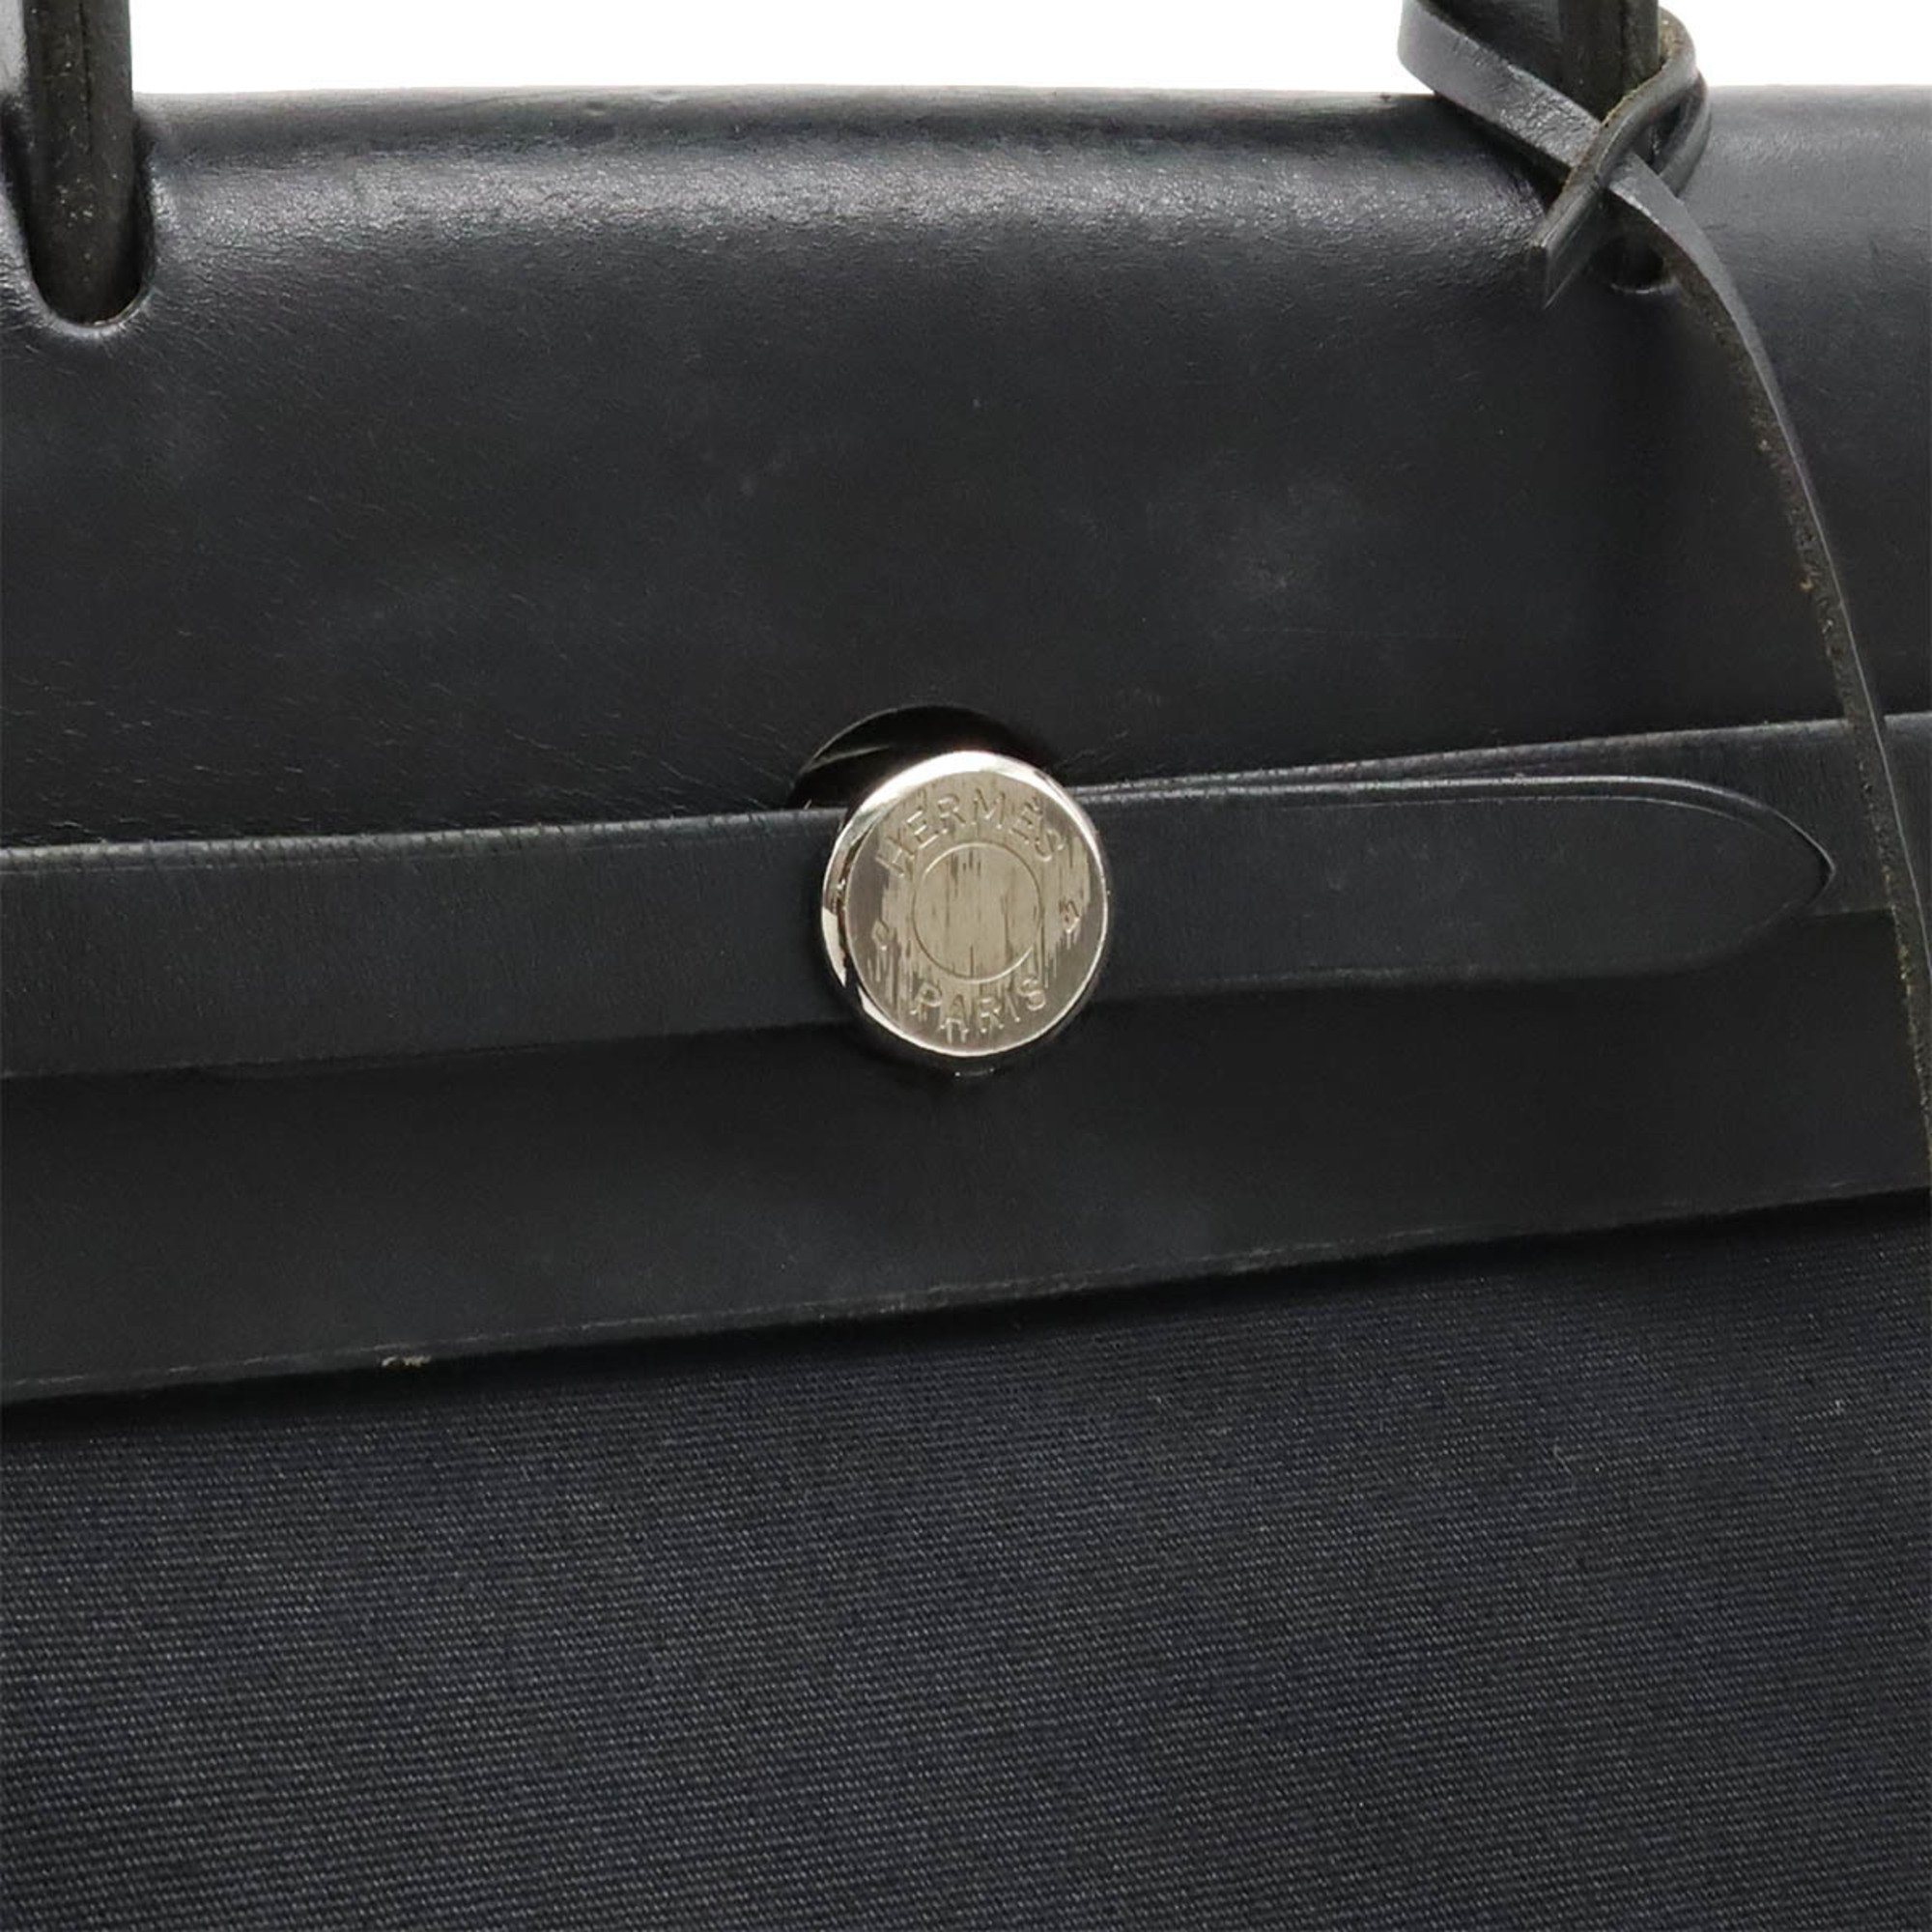 HERMES Hermes Airbag Ad PM Rucksack Backpack Handbag Toile Officier Leather Black G Stamp